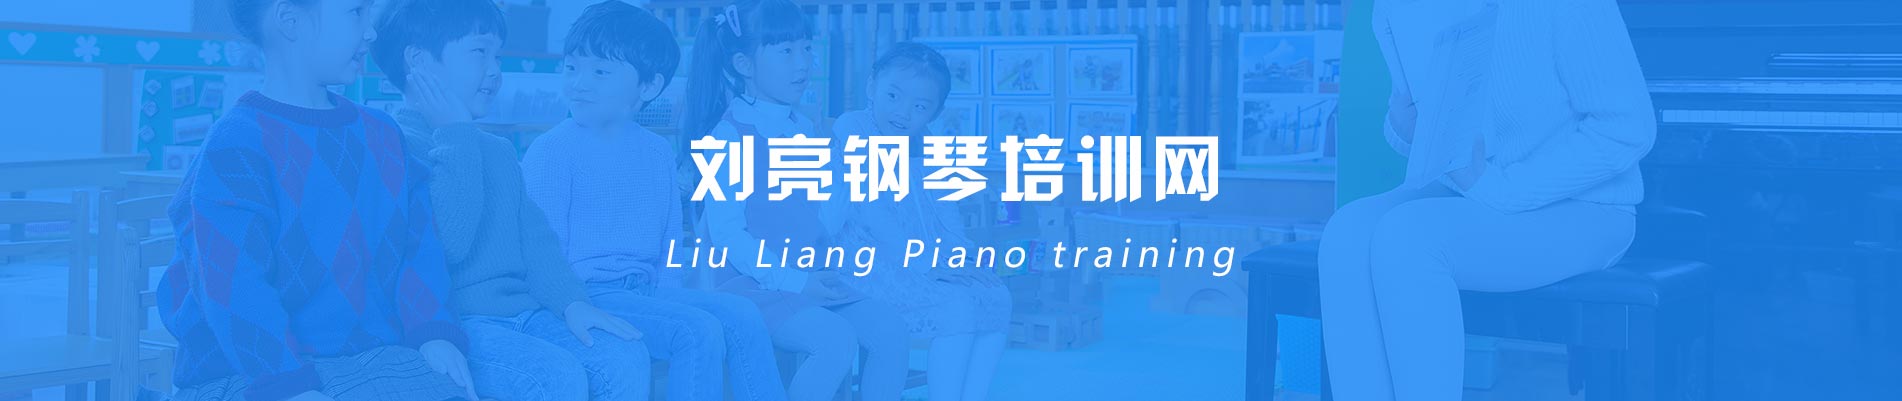 学生陈丹妮获得全国初中组钢琴专业金奖